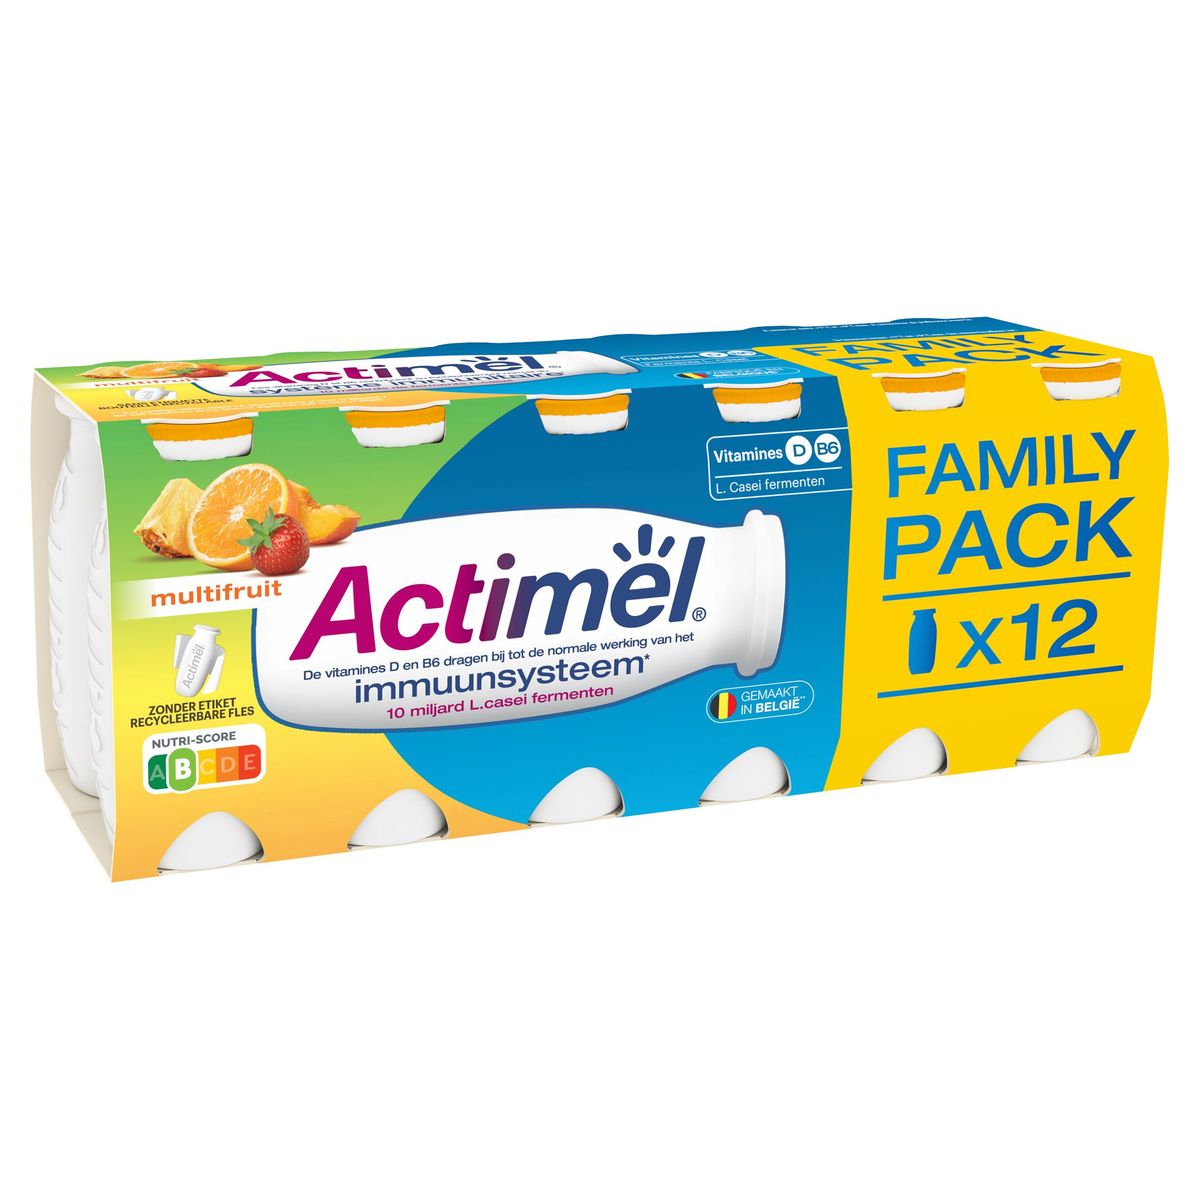 Actimel Multifruit Family Pack 12 x 100 g